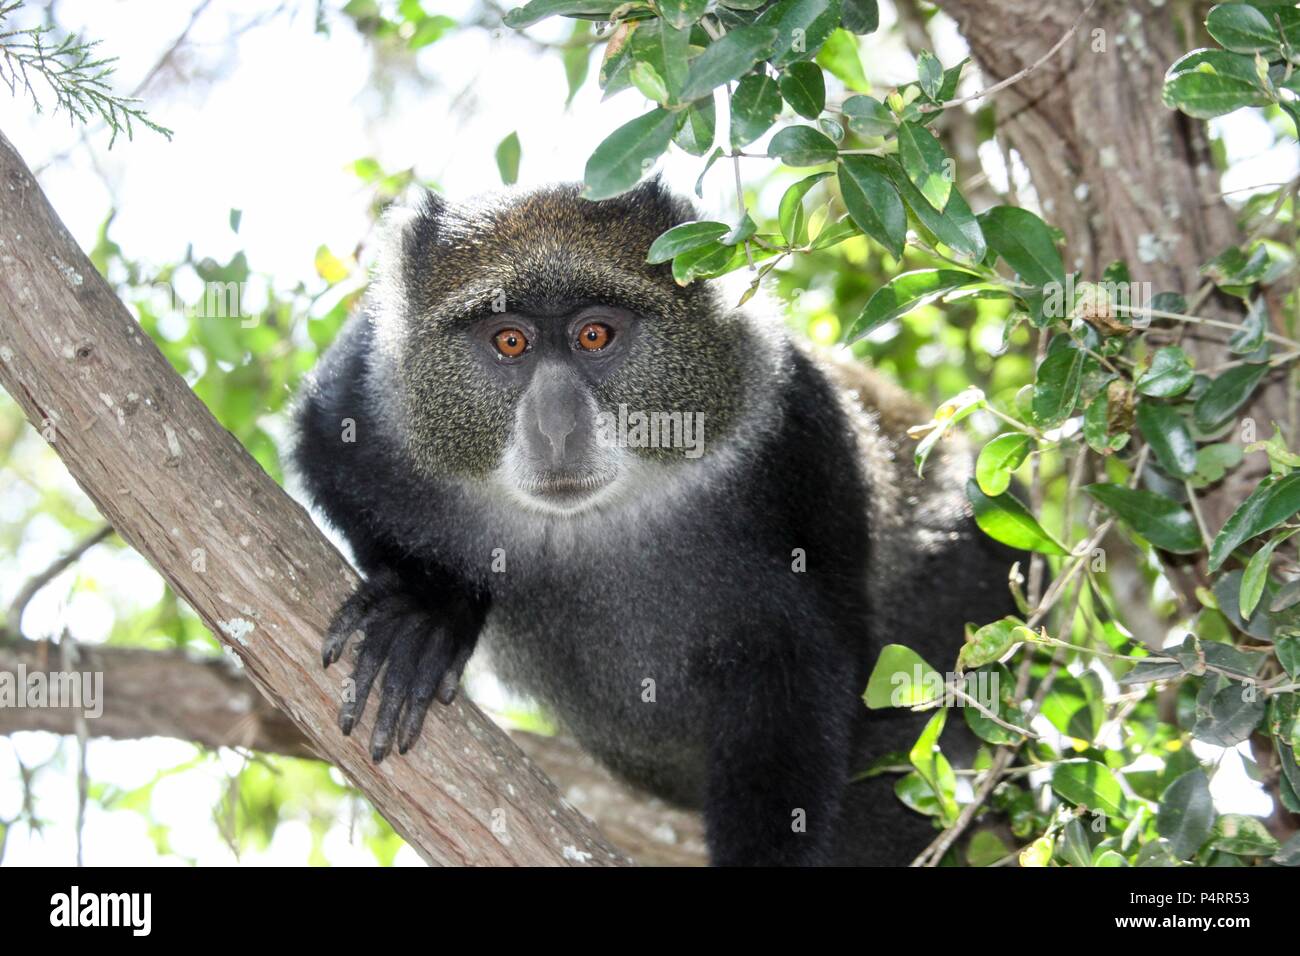 Blu, o samango, scimmia (Cercopithecus mitis) in una struttura ad albero. Questa scimmia vive in truppe, rinviando ad un maschio dominante (visto qui). Questo primate è tranquilla e timida, vivendo in le cime degli alberi tropicali foreste africane. Si nutre di frutta, foglie e artropodi. Fotografato in Tanzania. Foto Stock